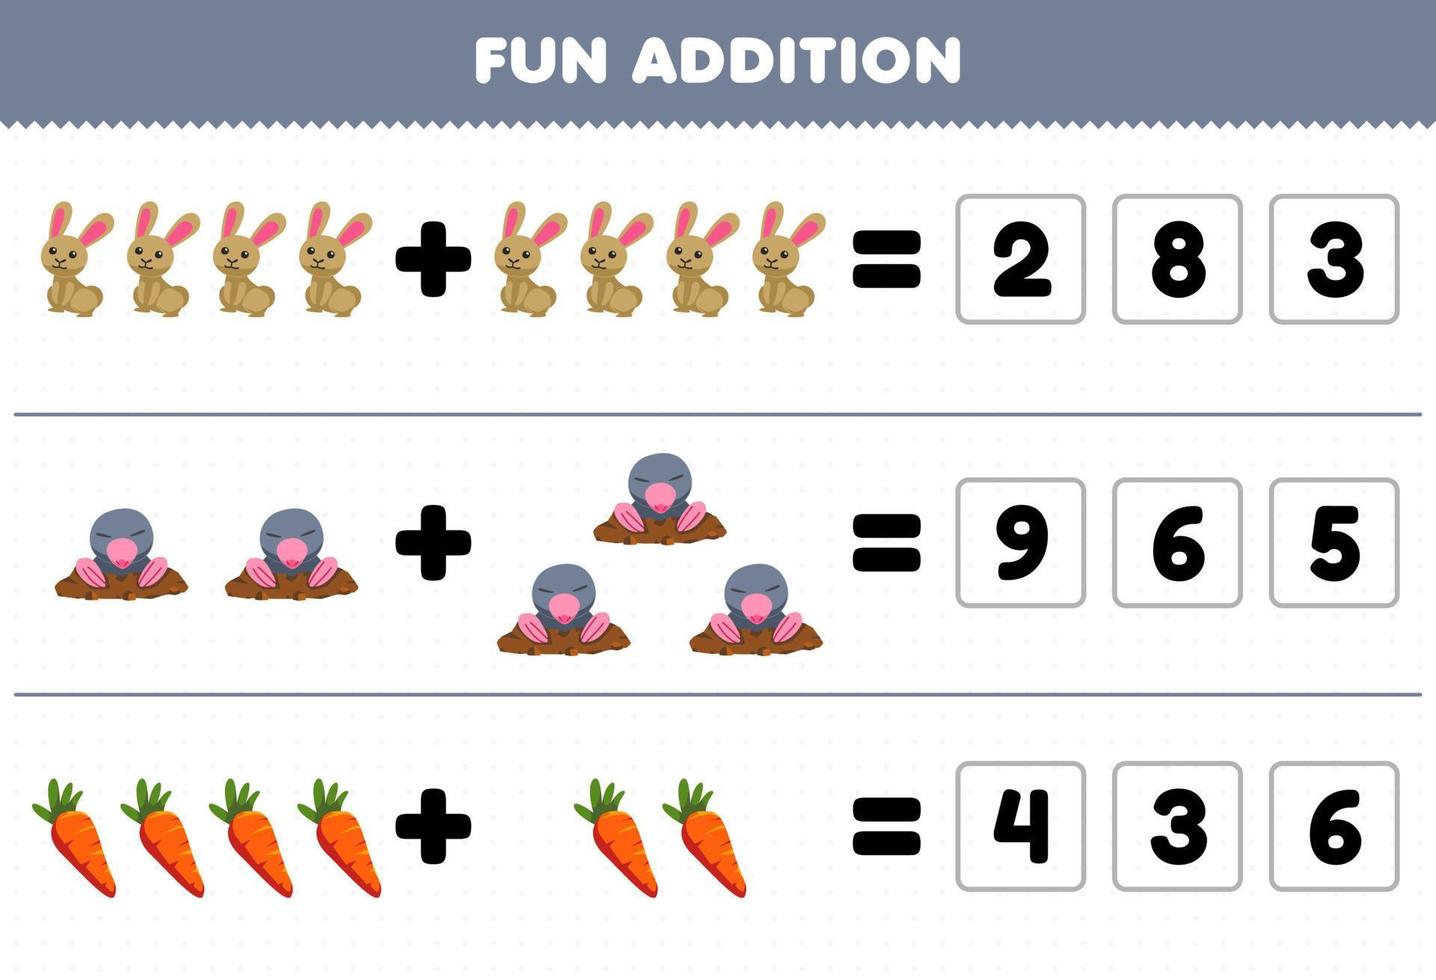 Lernspiel für Kinder Spaß Zusatz durch Erraten der richtigen Anzahl von niedlichen Cartoon-Kaninchen Maulwurf Karotte druckbares Farm-Arbeitsblatt vektor